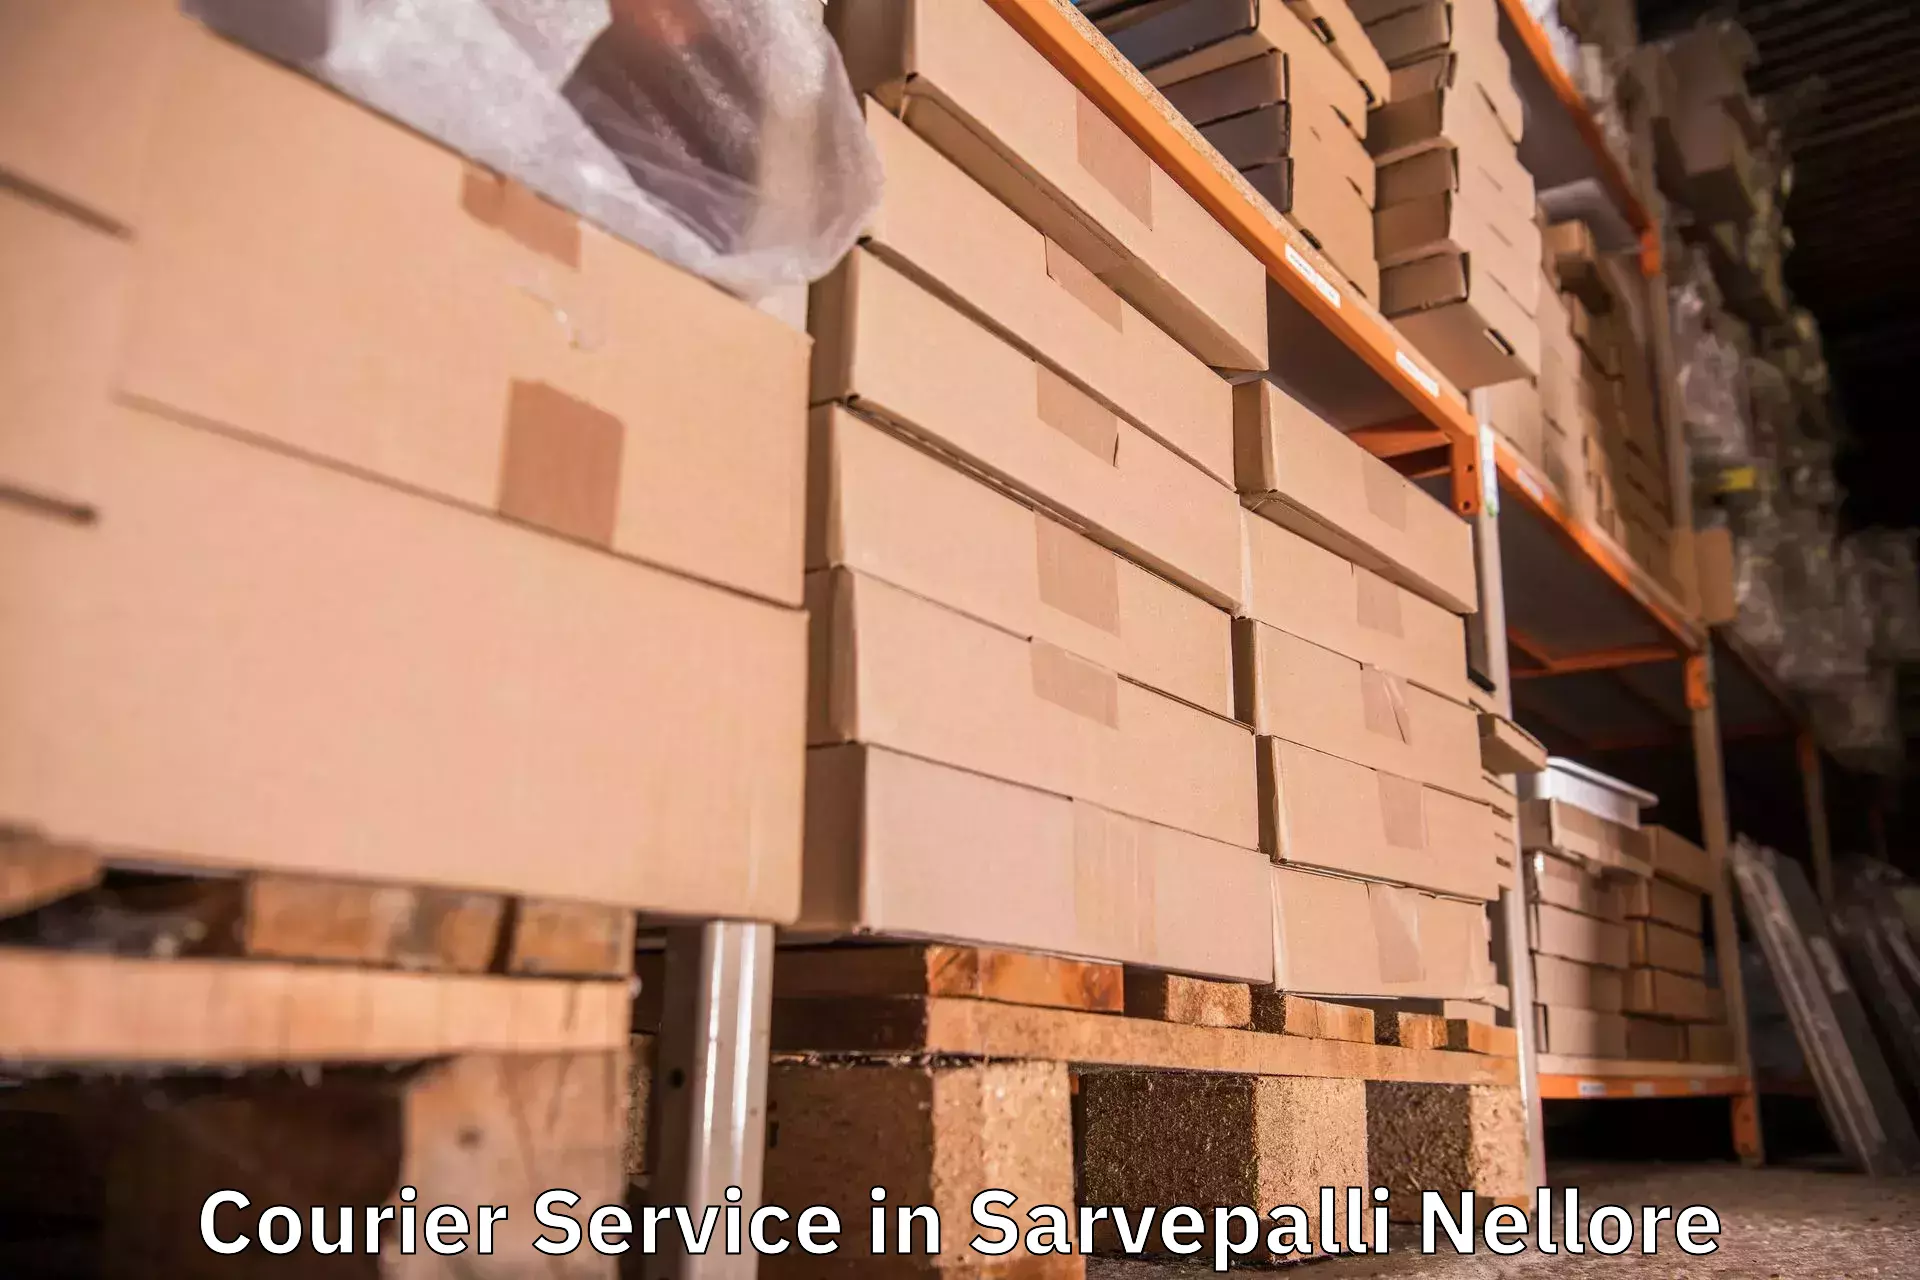 Rapid shipping services in Sarvepalli Nellore